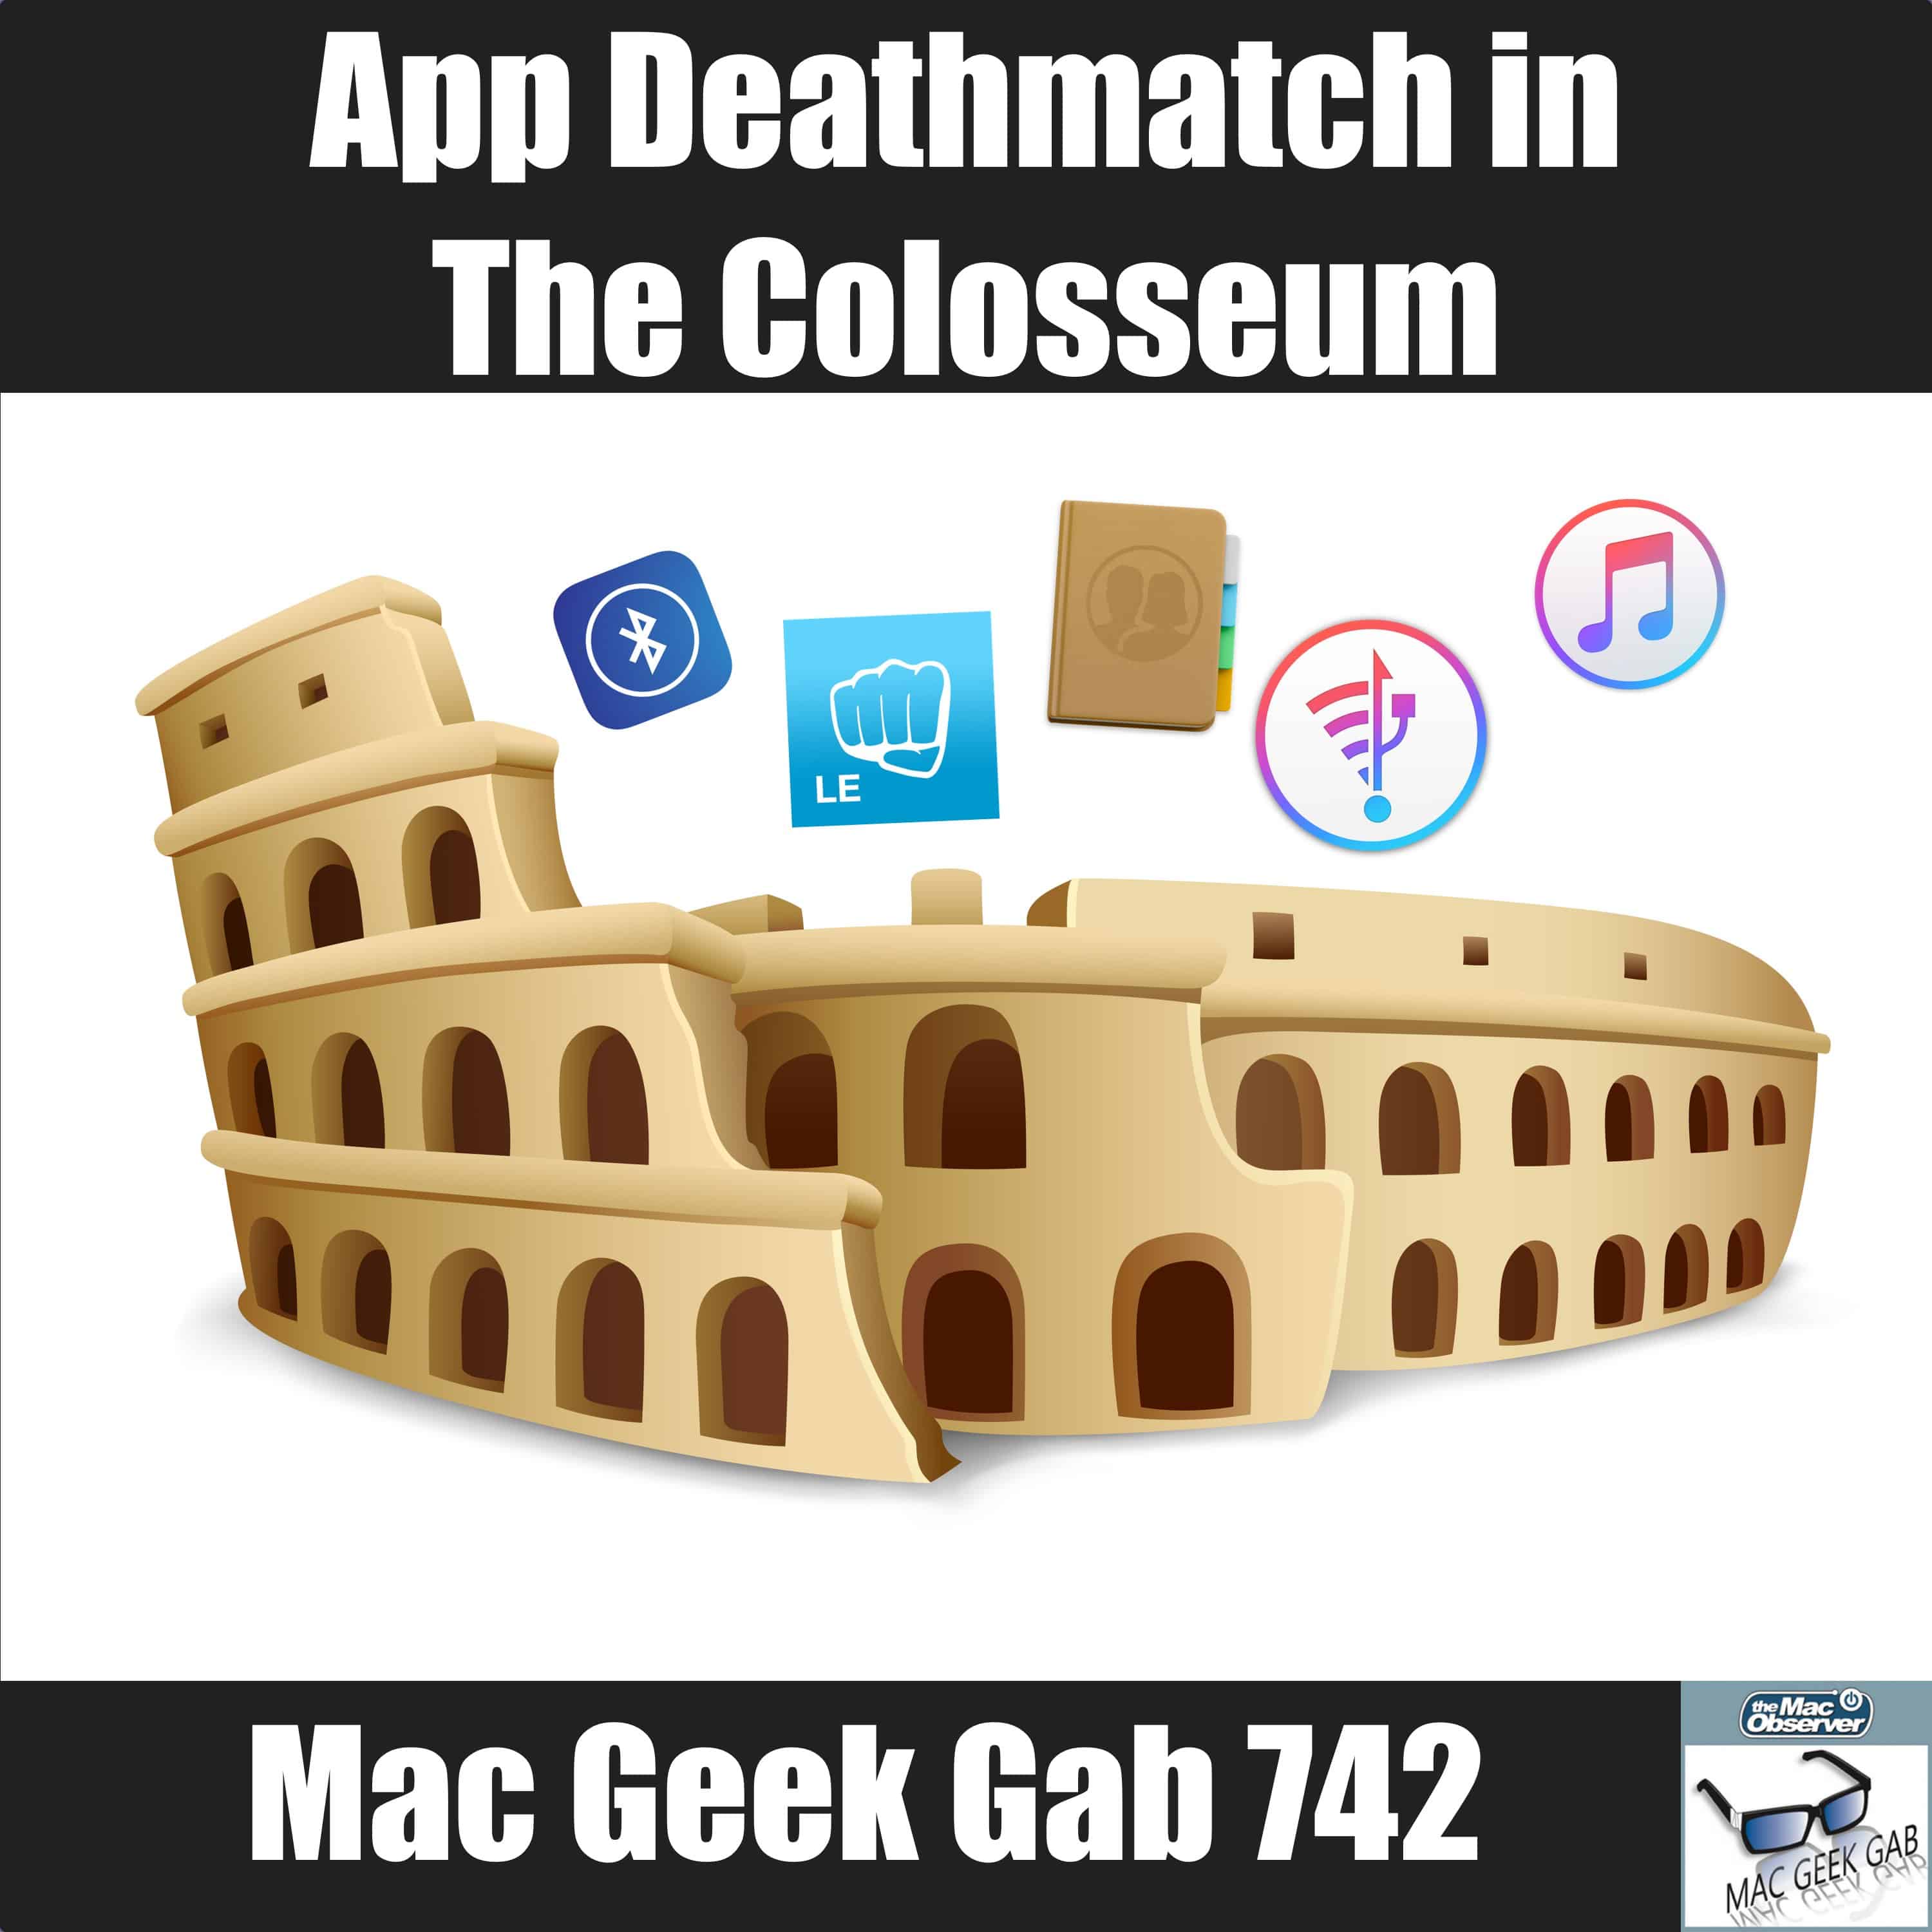 App Death Match in The Colosseum – Mac Geek Gab 742